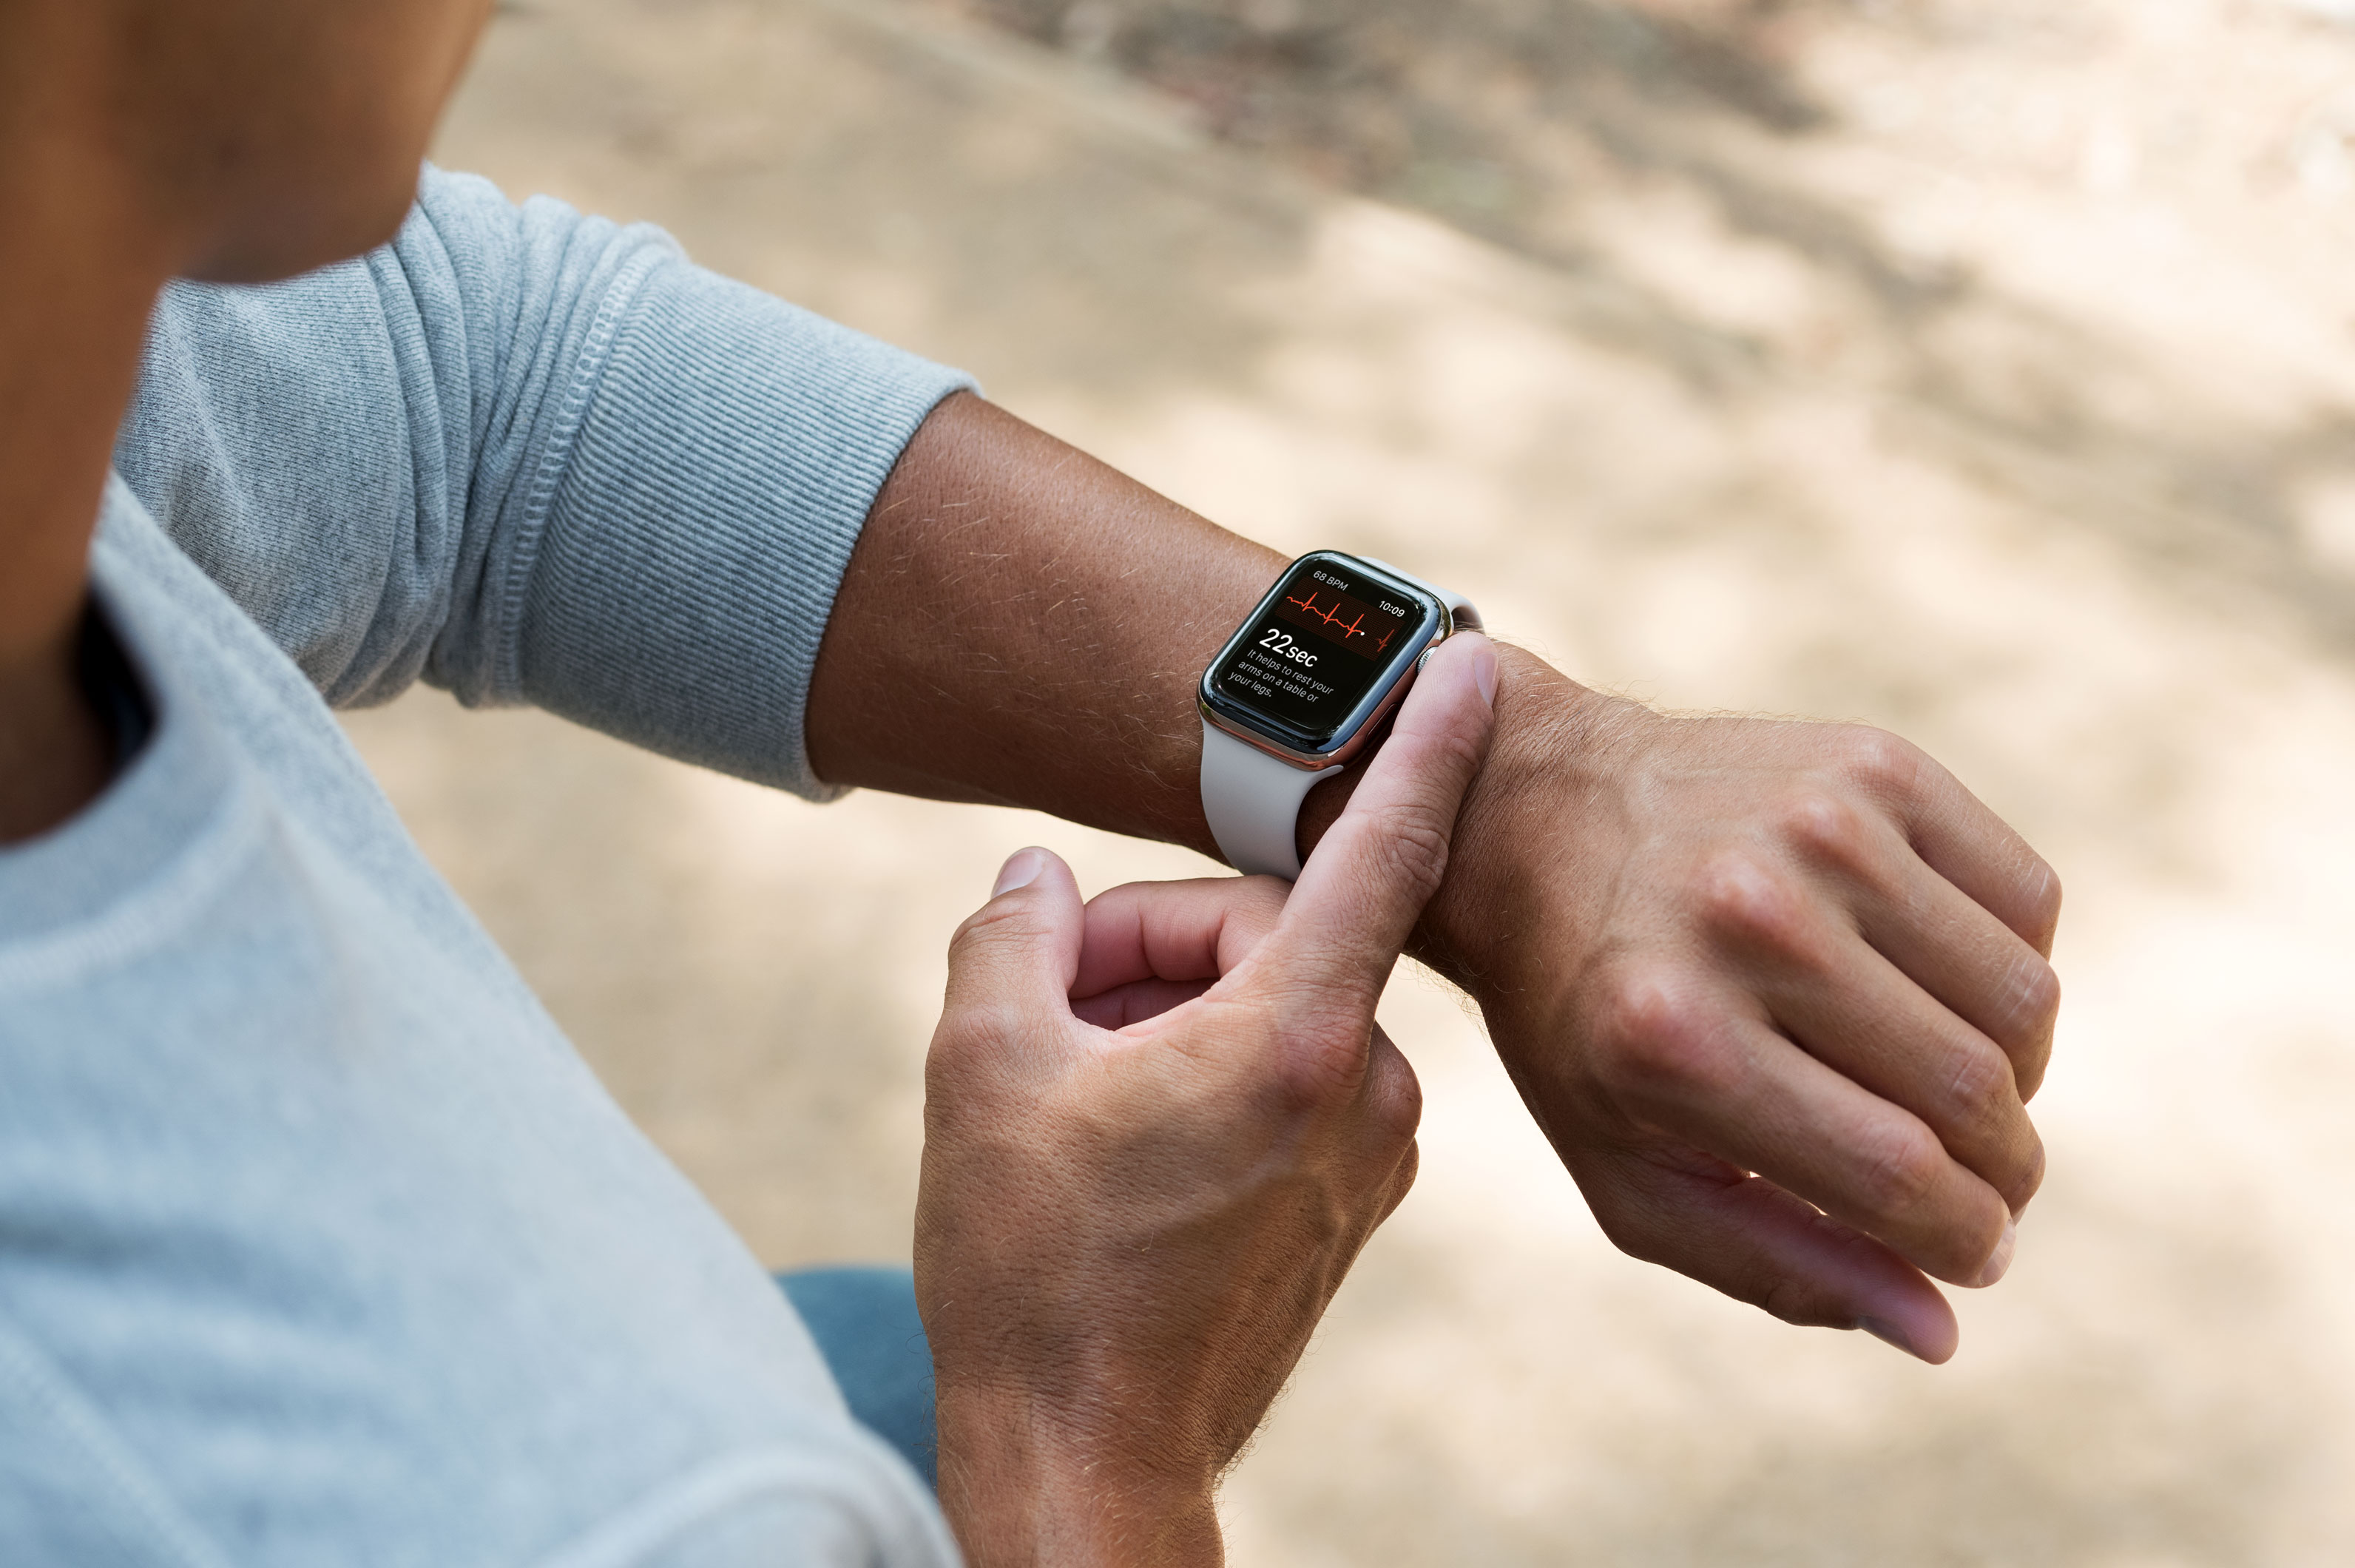 EKG v Apple Watch je pro většinu populace zbytečnost, říká kardiolog